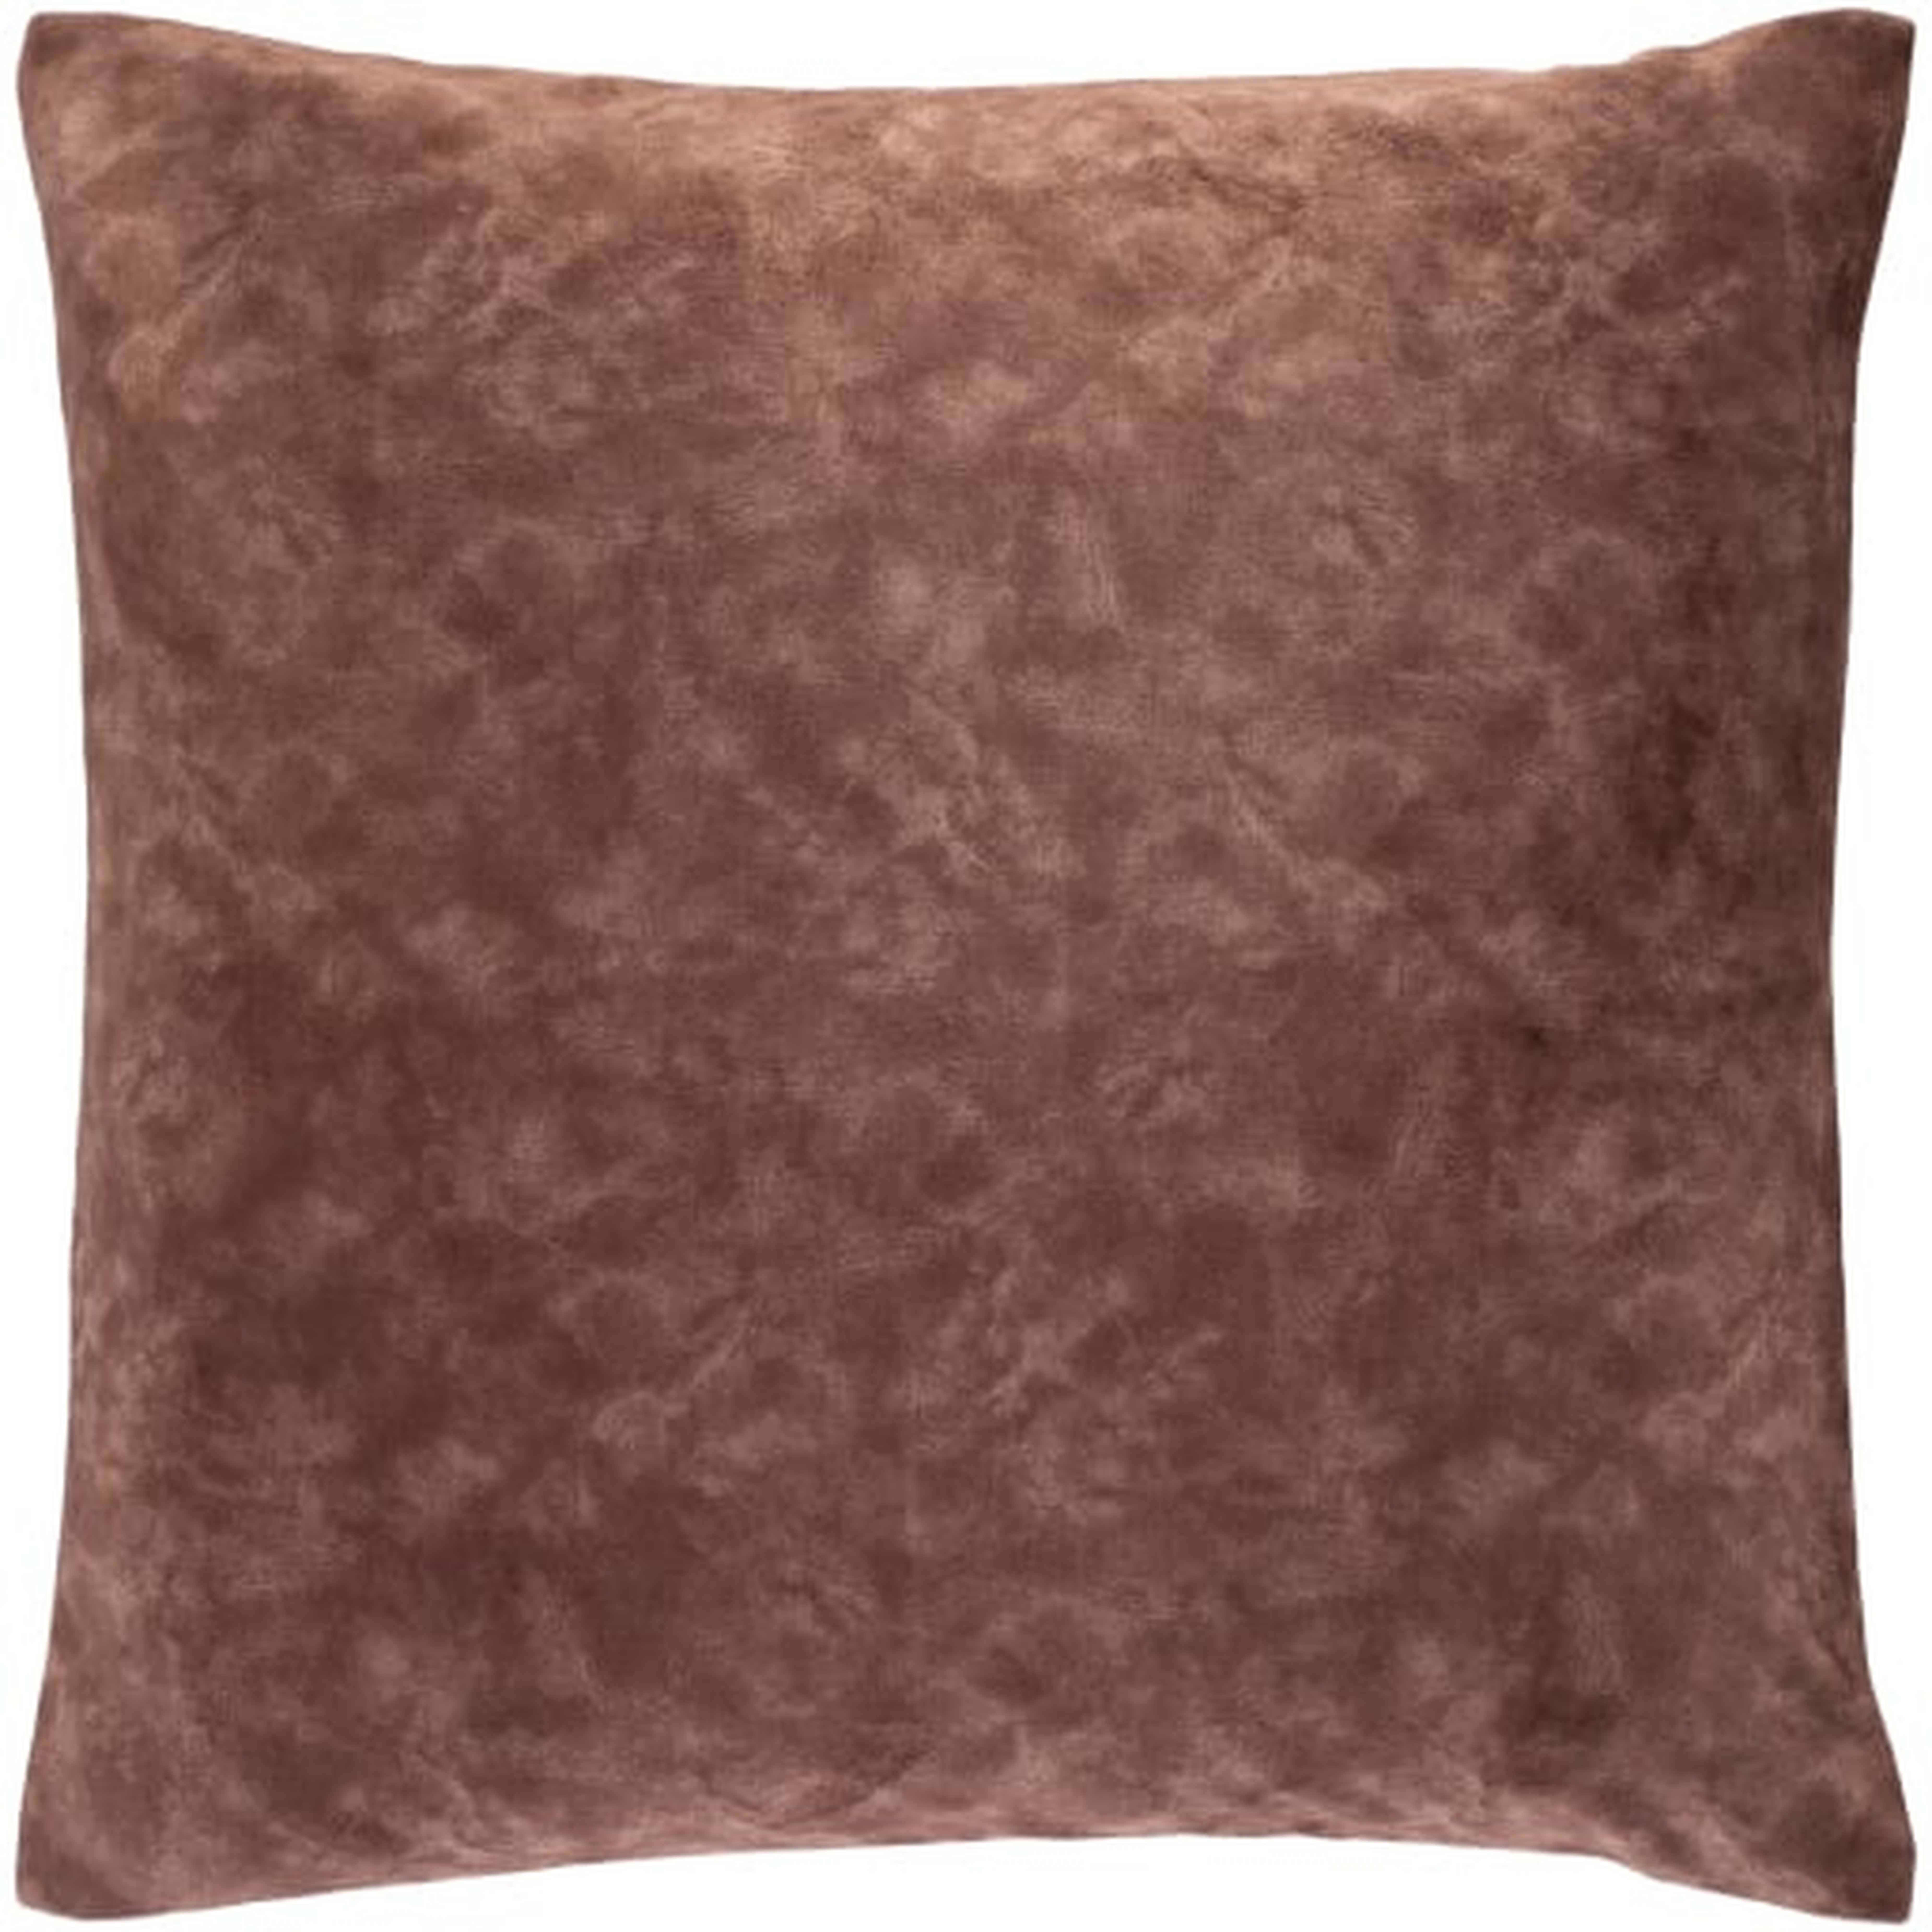 Fine Velvet Pillow, Brown, 20" x 20" - Havenly Essentials